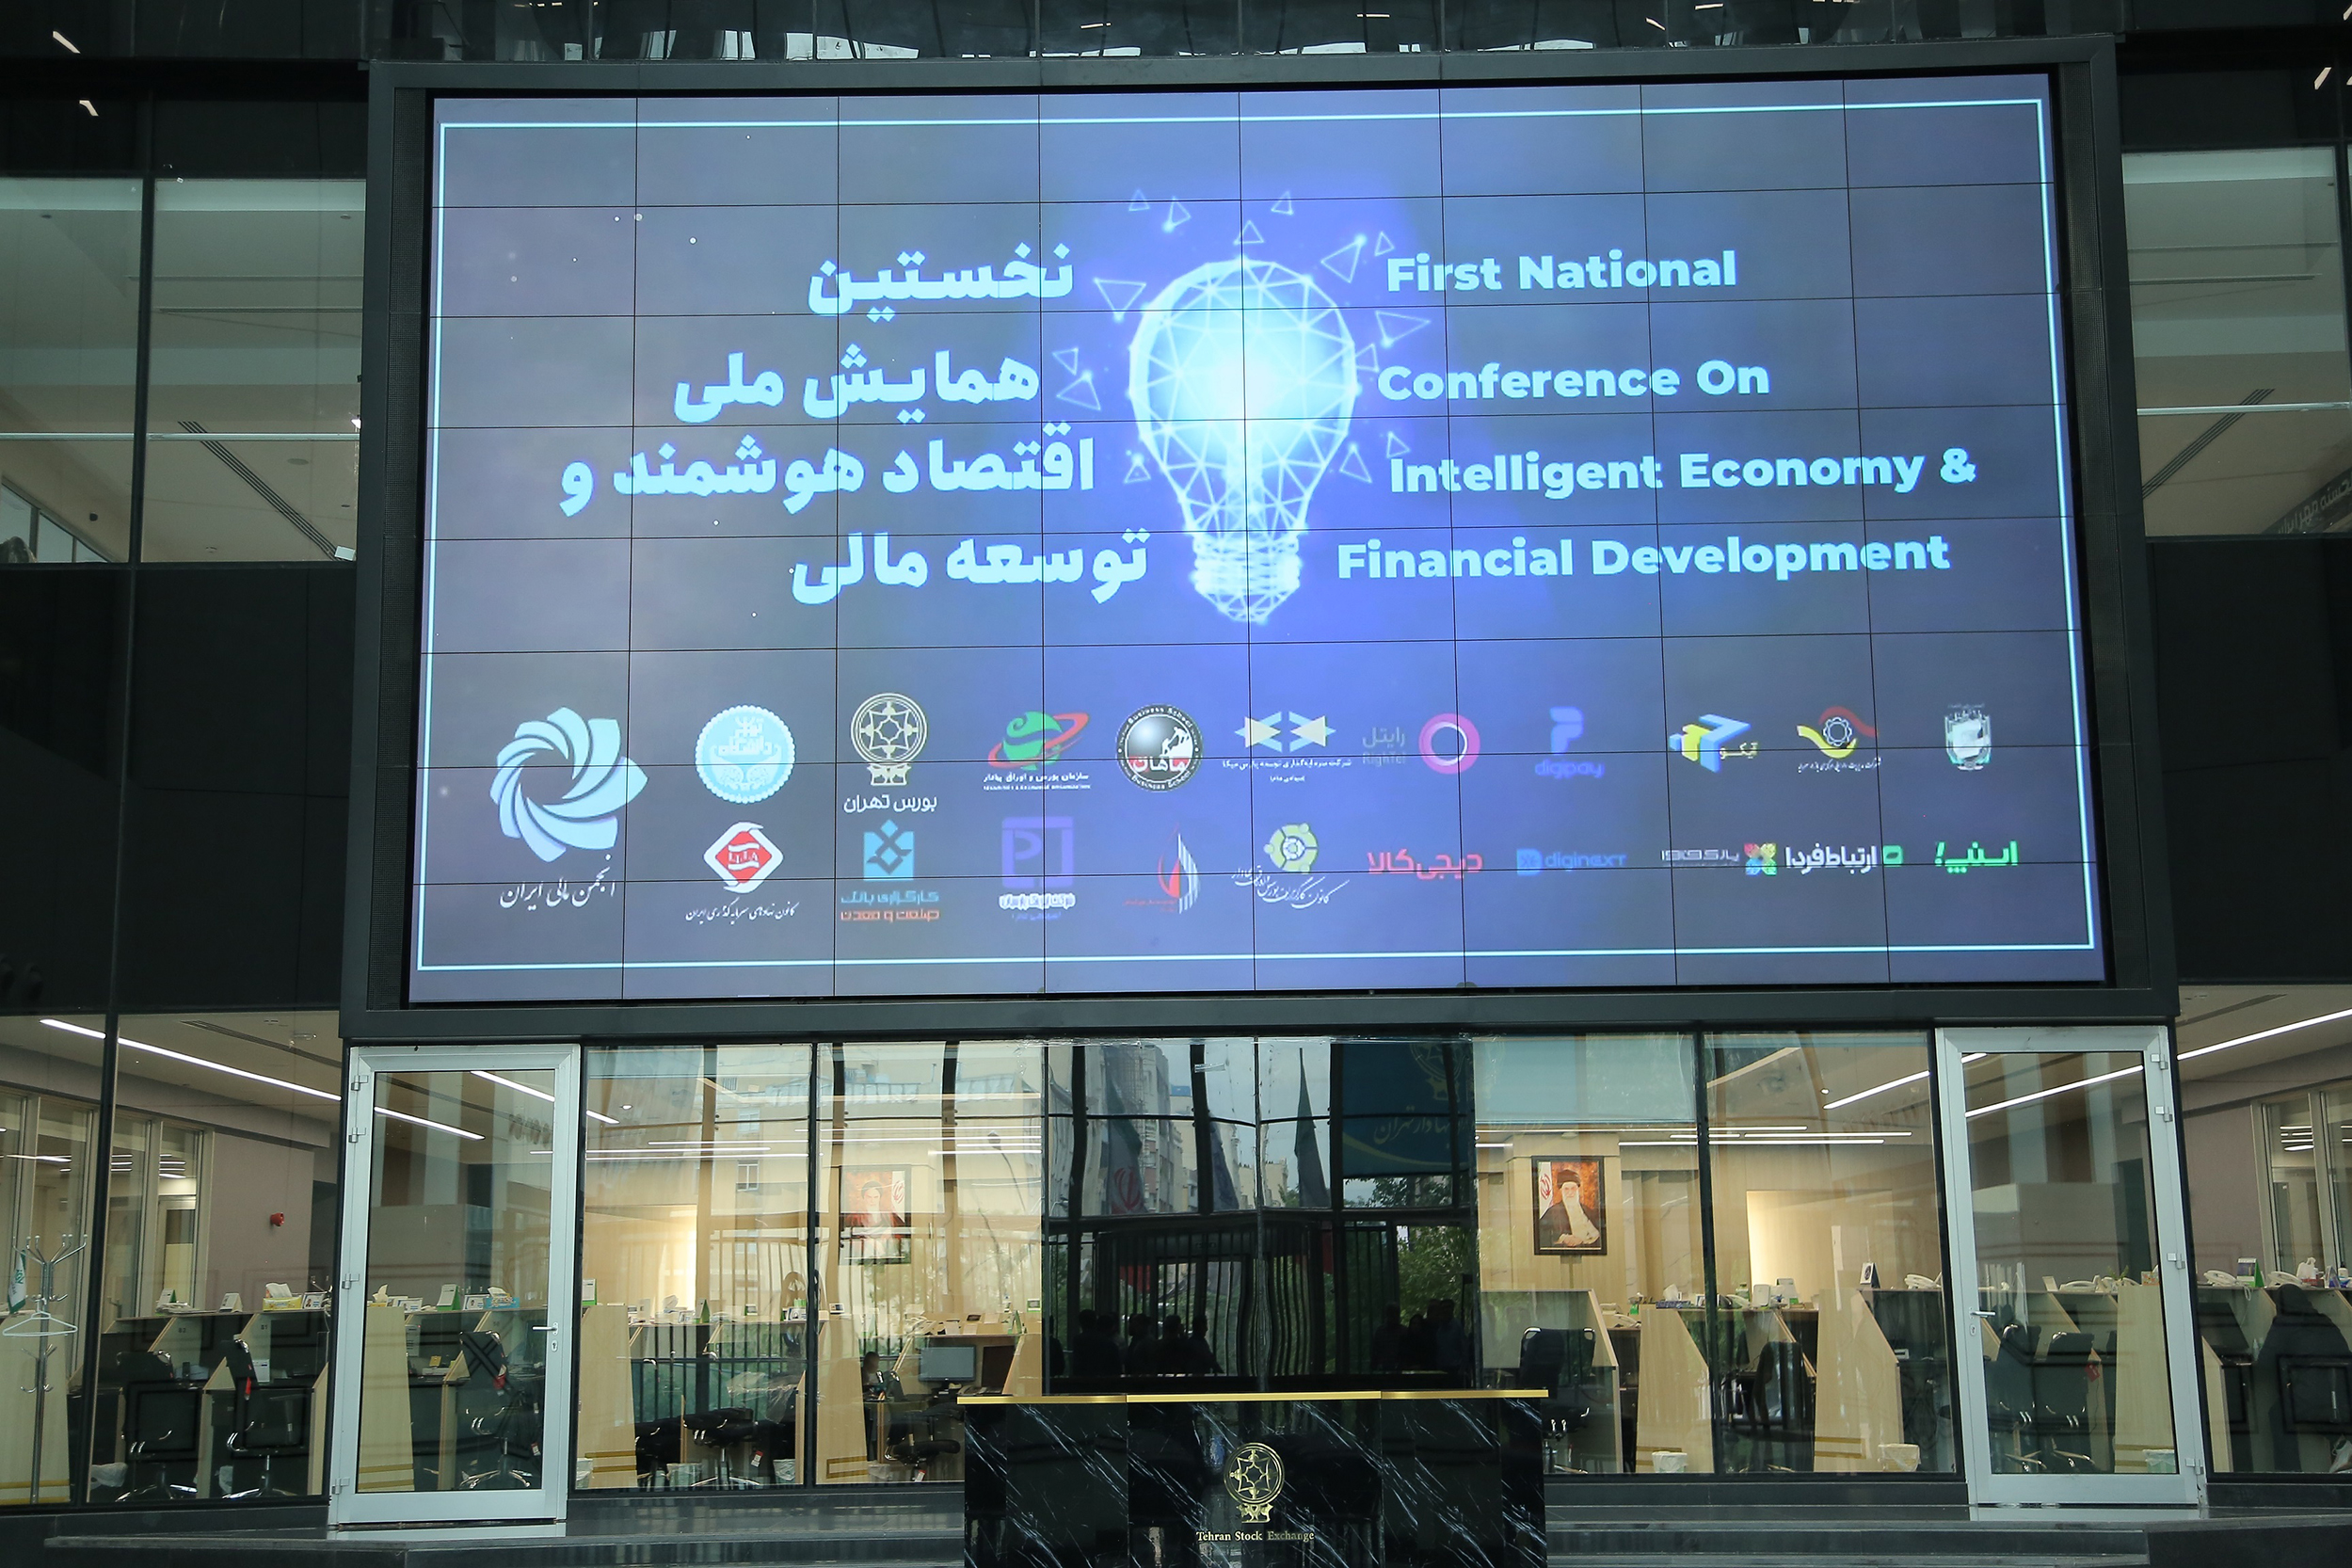 برگزاری اولین همایش «اقتصاد هوشمند و توسعه مالی»